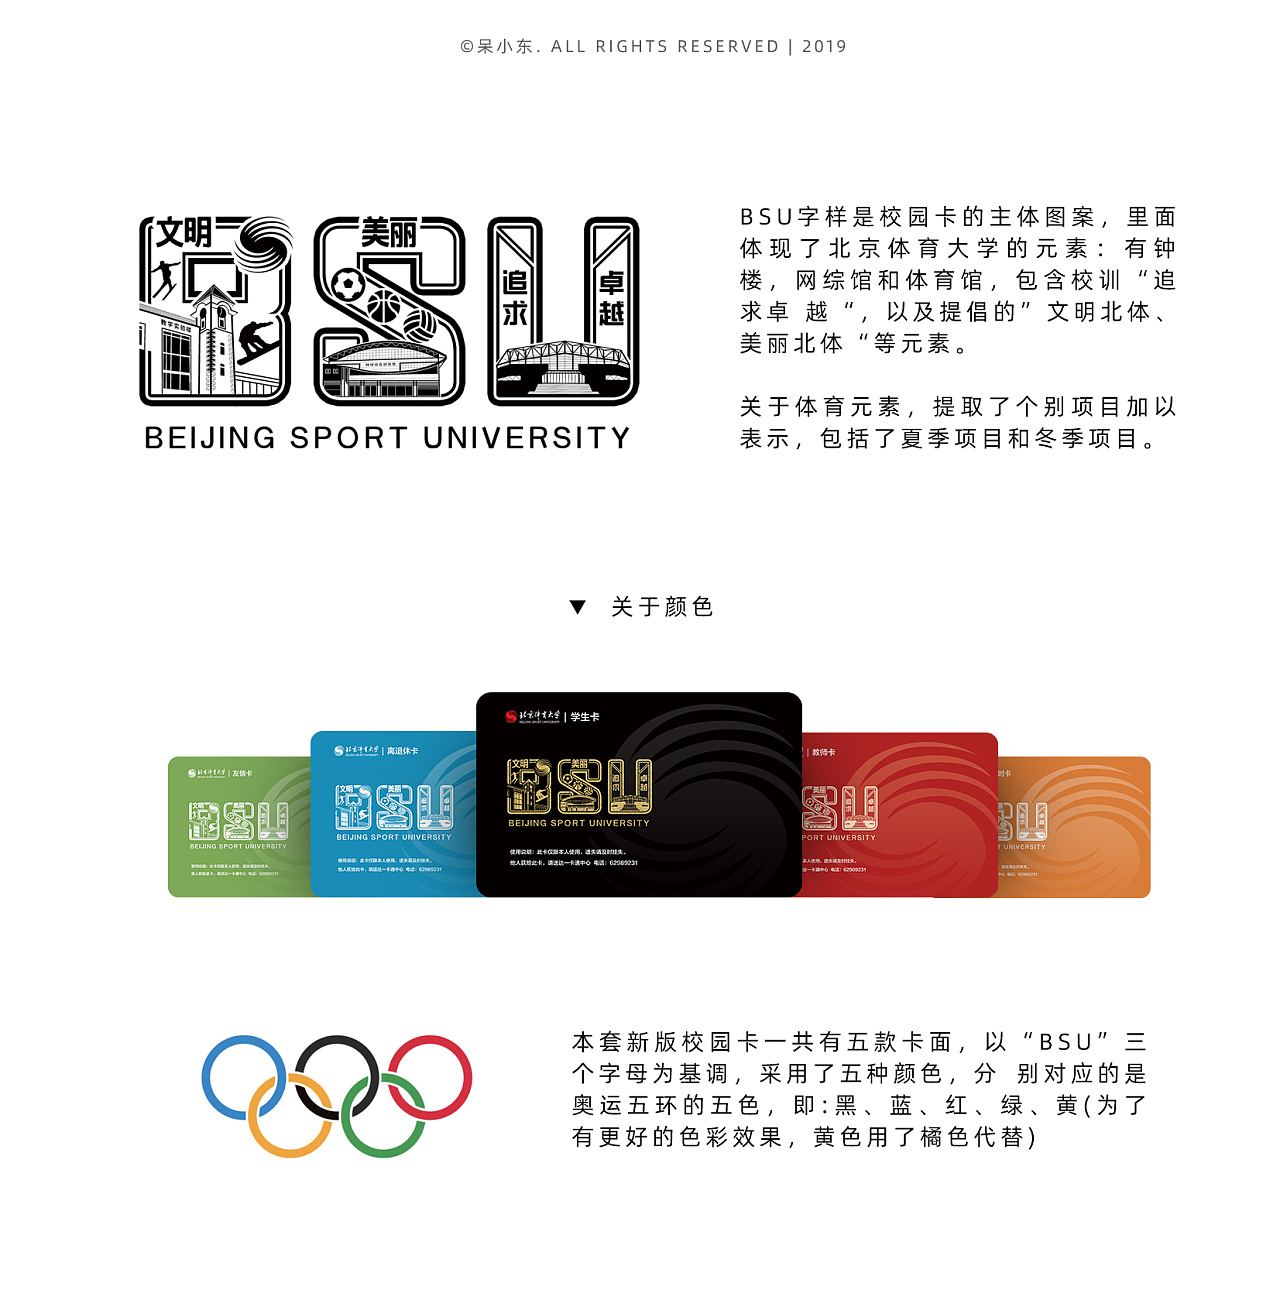 北京体育大学新版校园卡设计